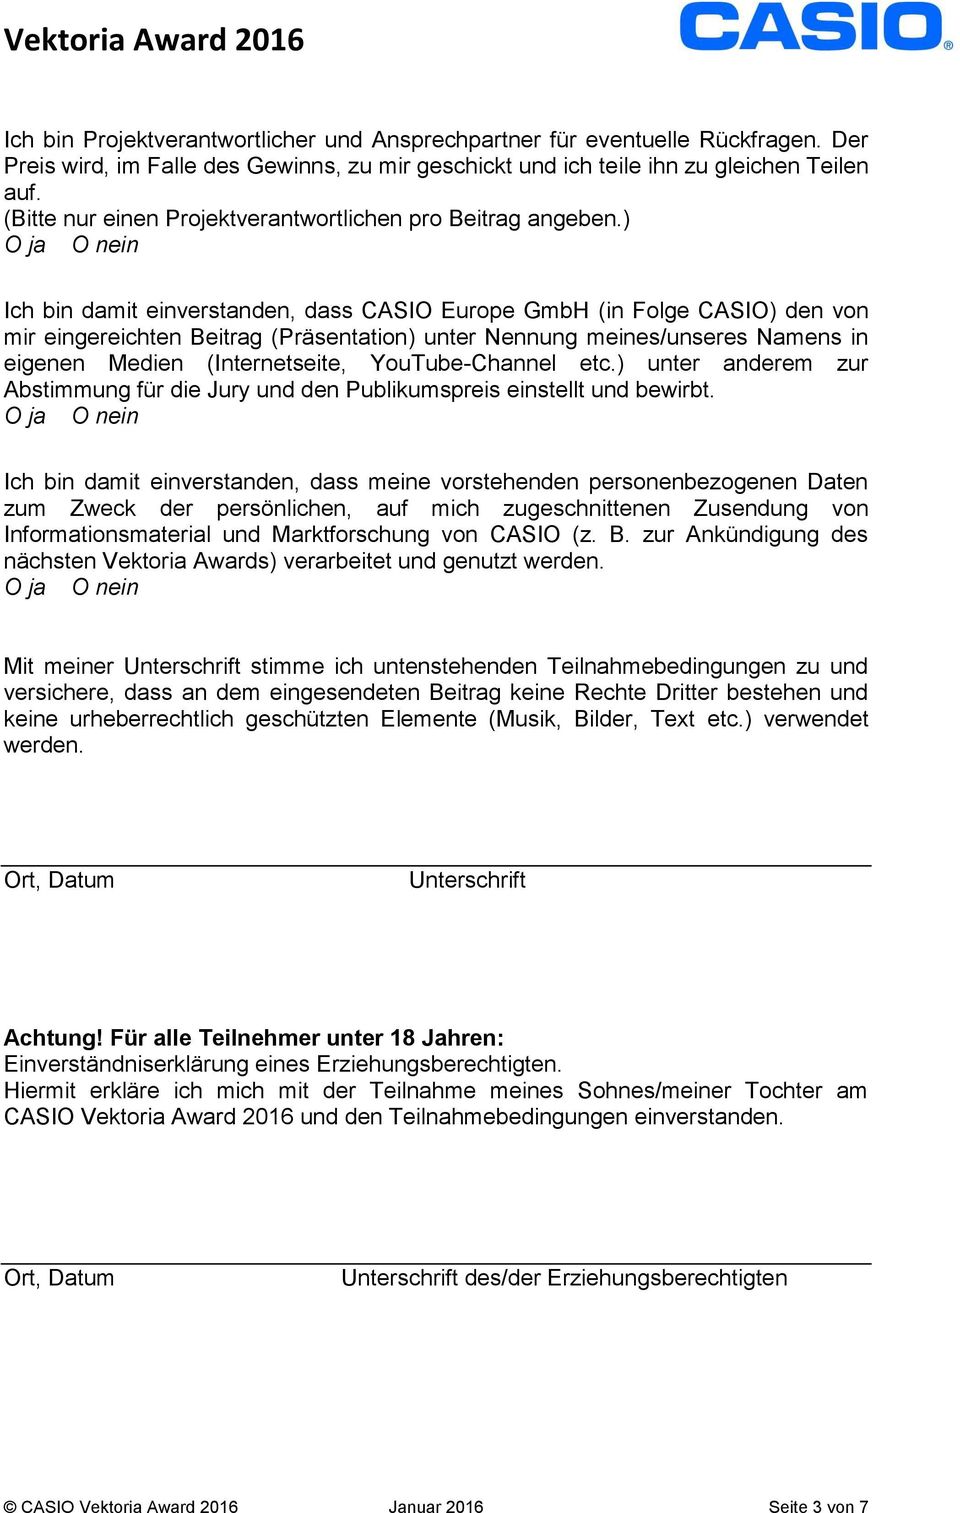 ) O ja O nein Ich bin damit einverstanden, dass CASIO Europe GmbH (in Folge CASIO) den von mir eingereichten Beitrag (Präsentation) unter Nennung meines/unseres Namens in eigenen Medien